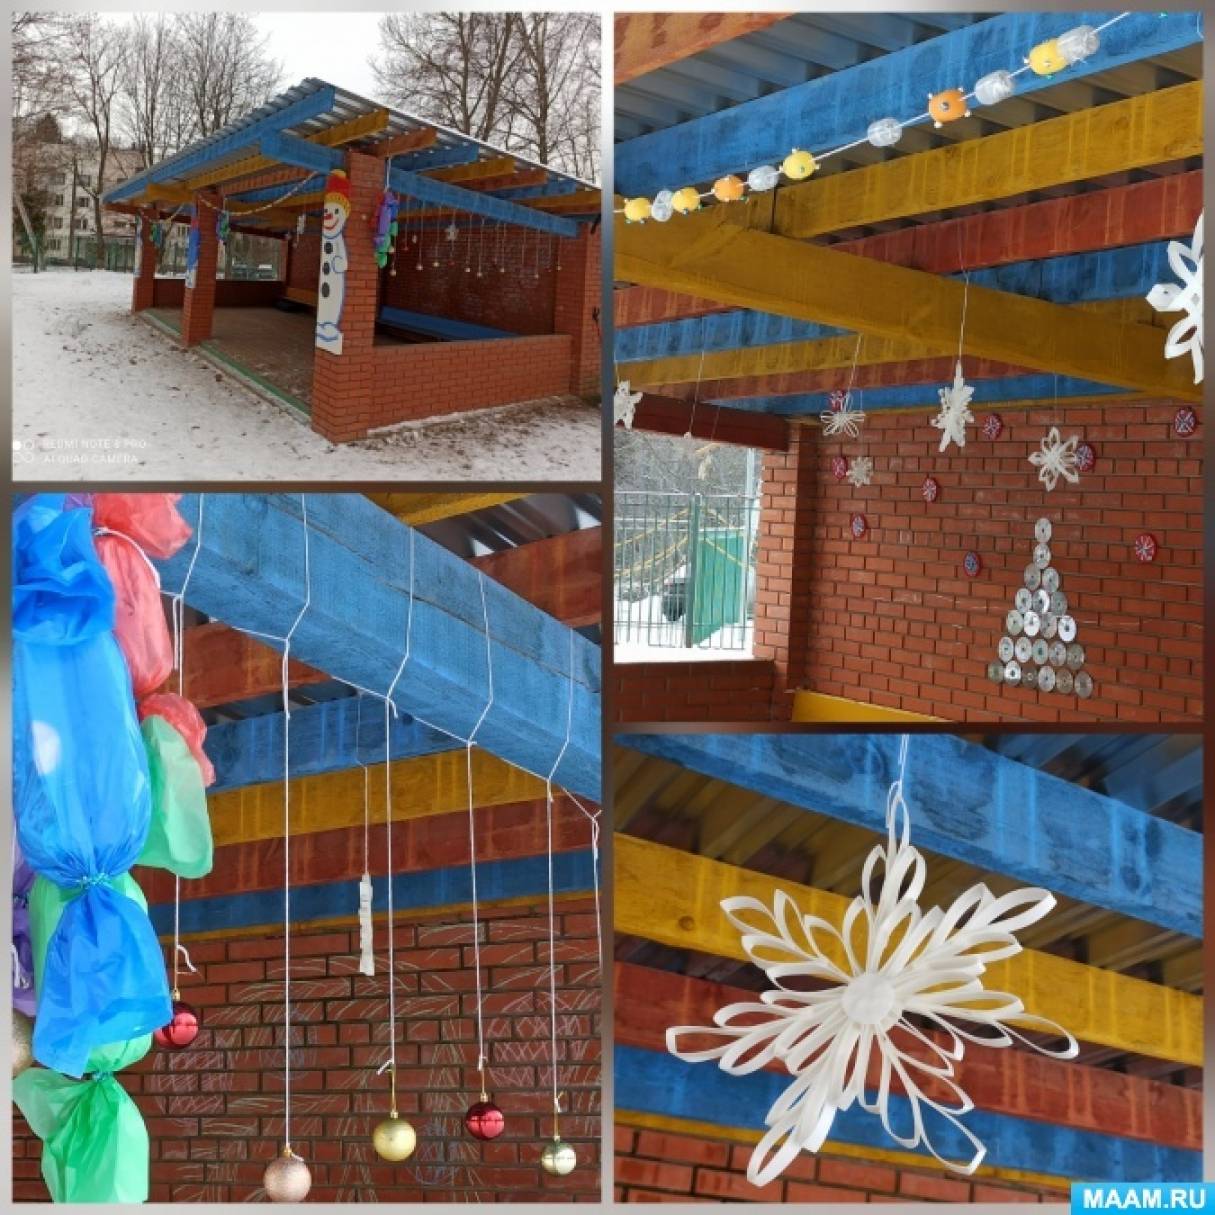 Как украсить детский сад к Новому году 2025, фото-идеи для декора своими руками